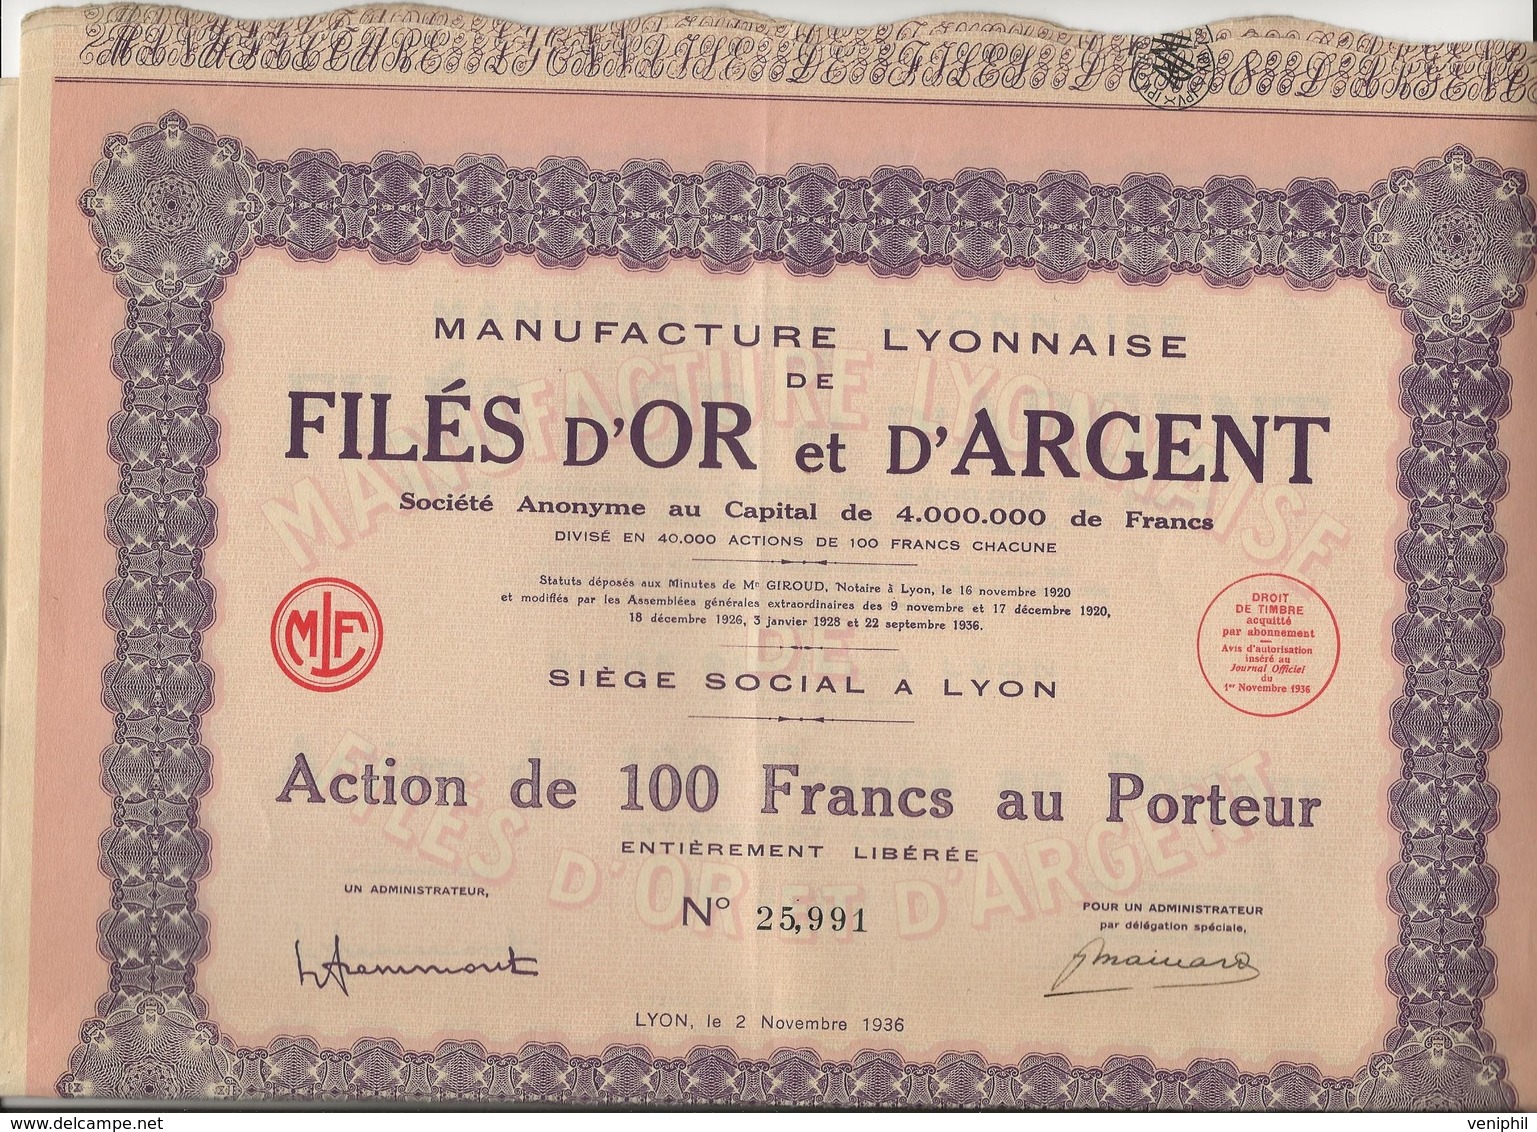 MANUFACTURE LYONNAISE DE FILES D'OR ET D'ARGENT - ACTION DE 100 FRANCS -ANNEE 1936 - Textile